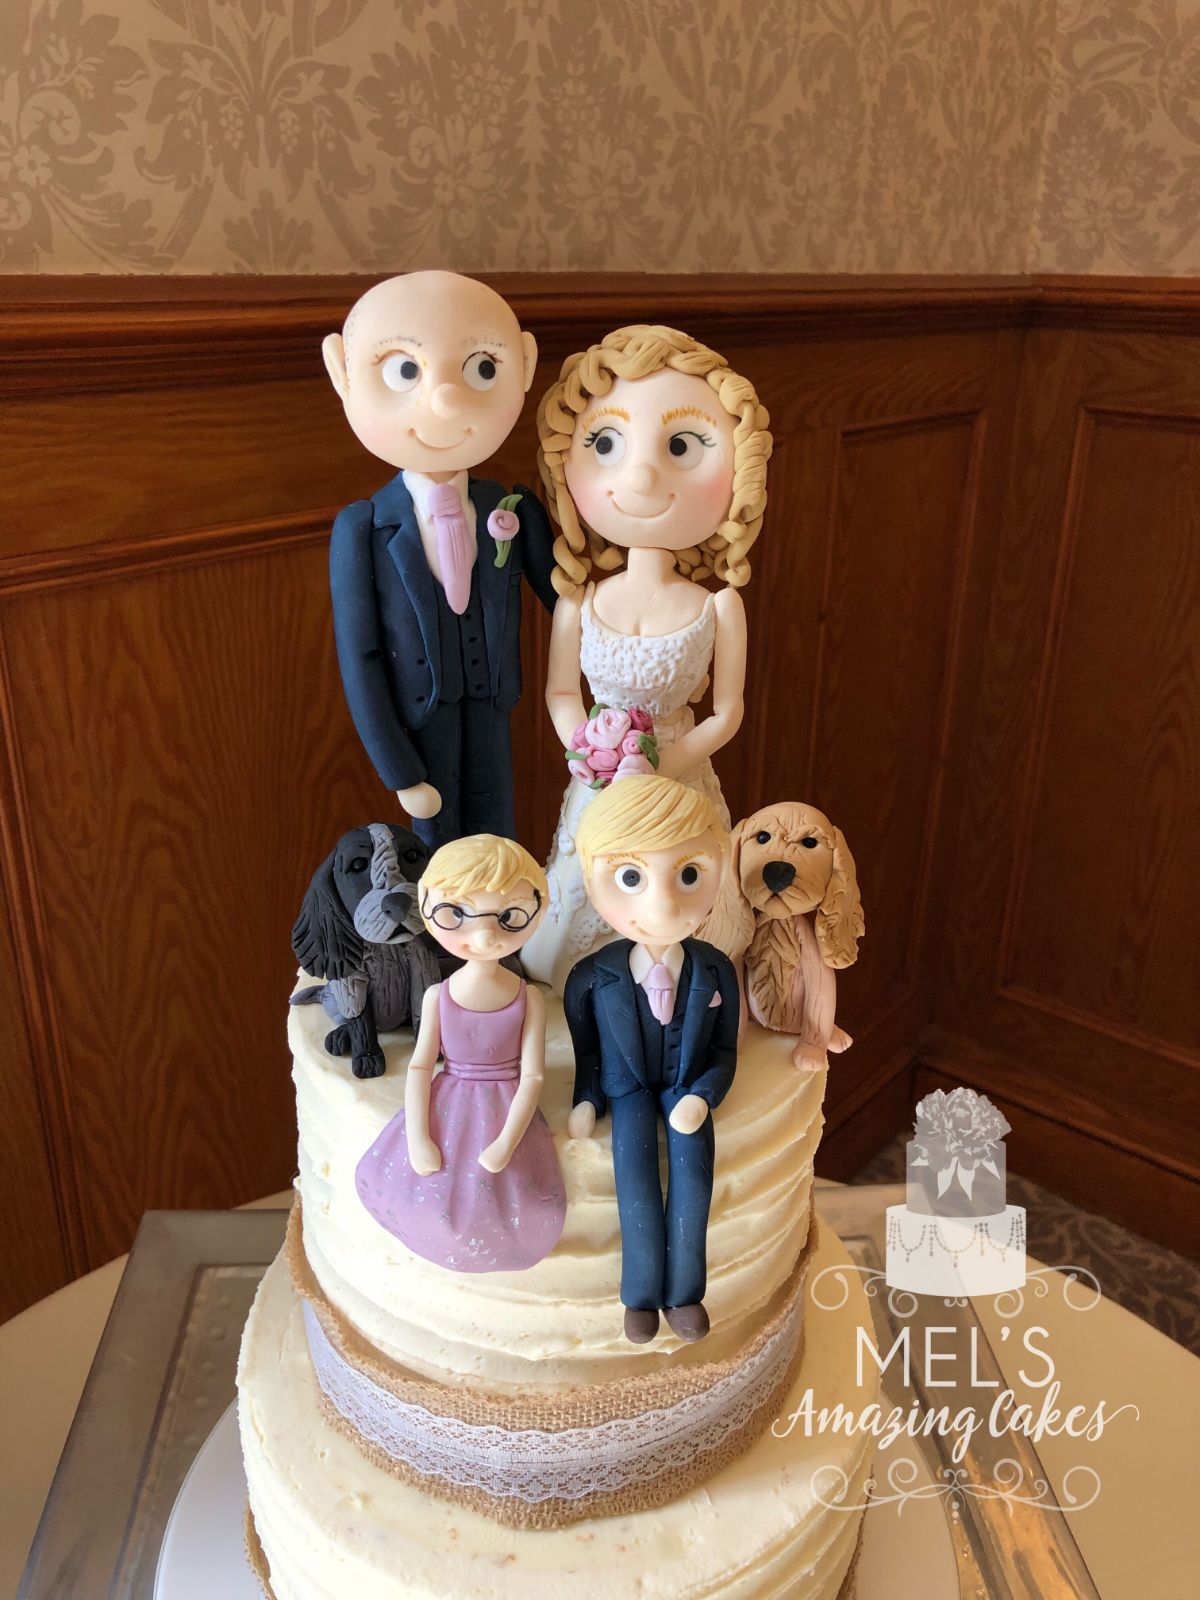 Mel's Amazing Cakes-Image-7